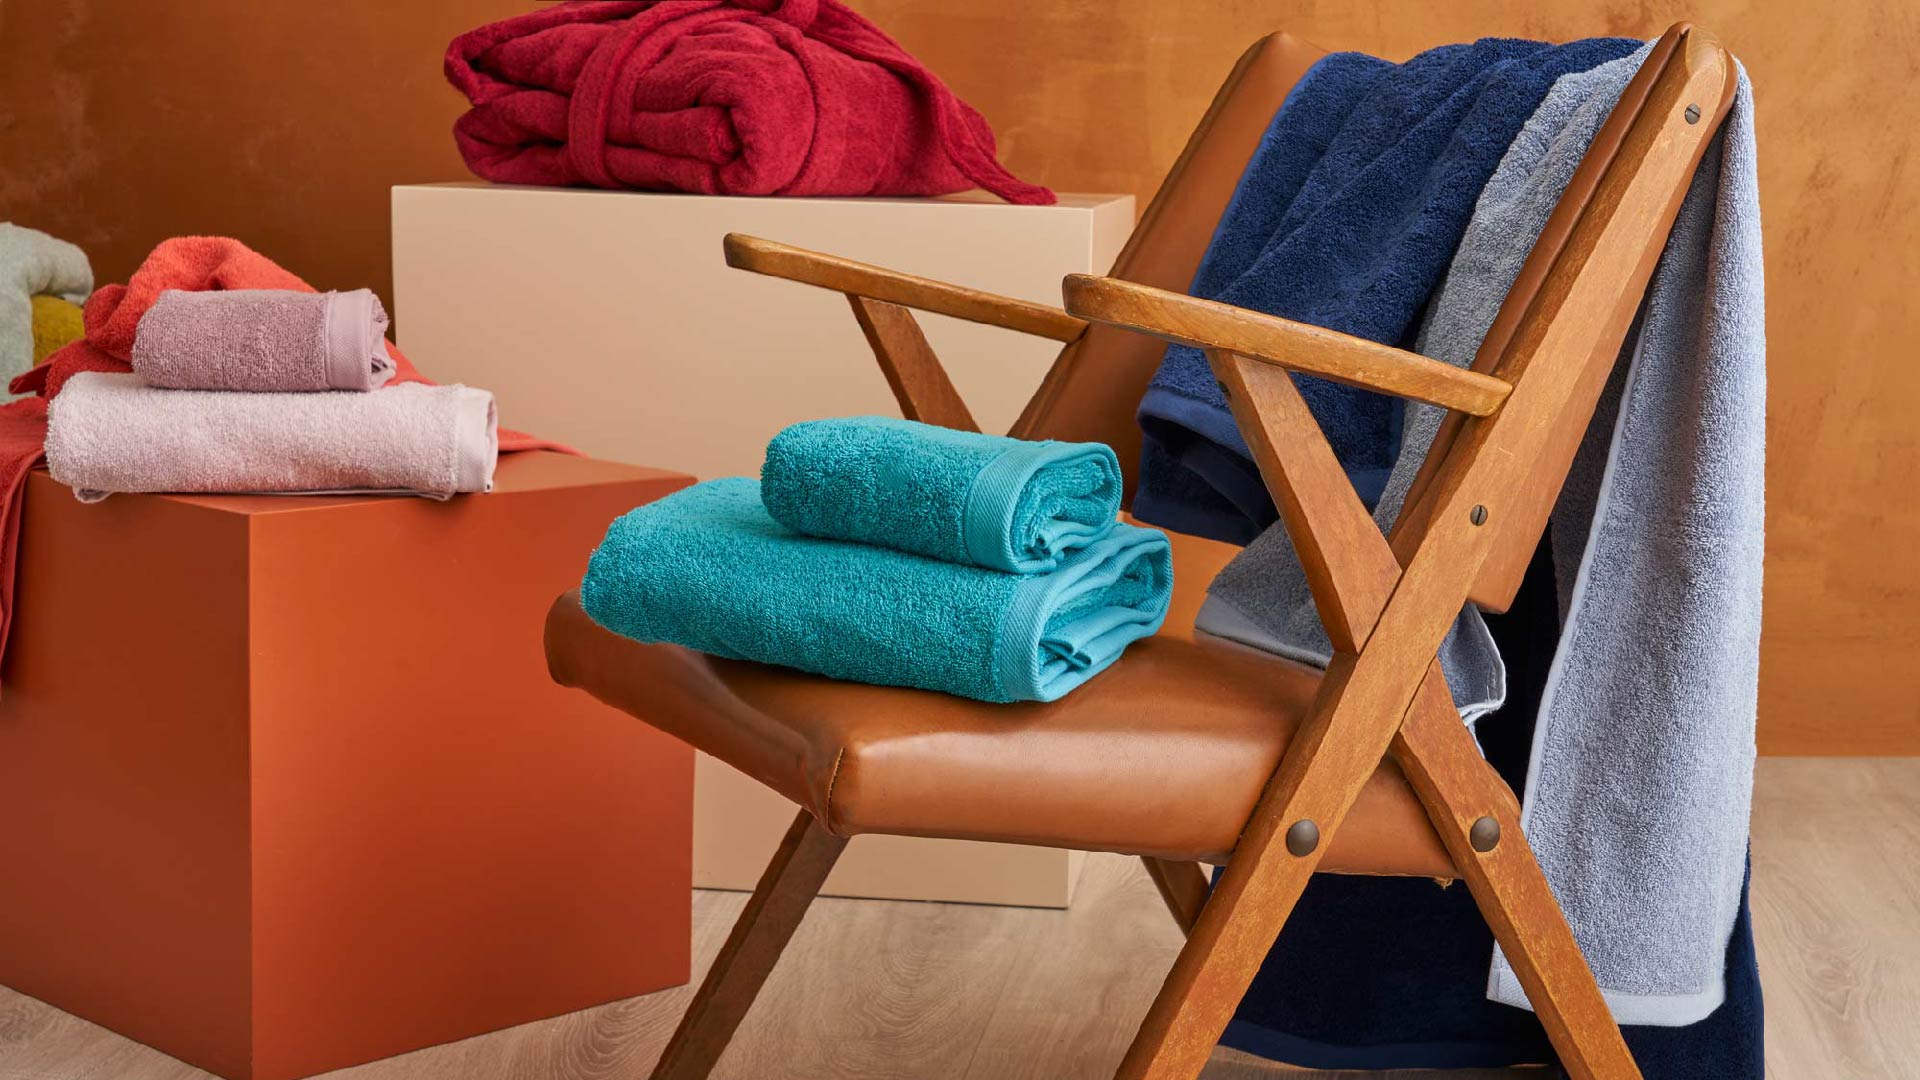 Asciugamani per gli ospiti secondo il galateo: quanti e quali